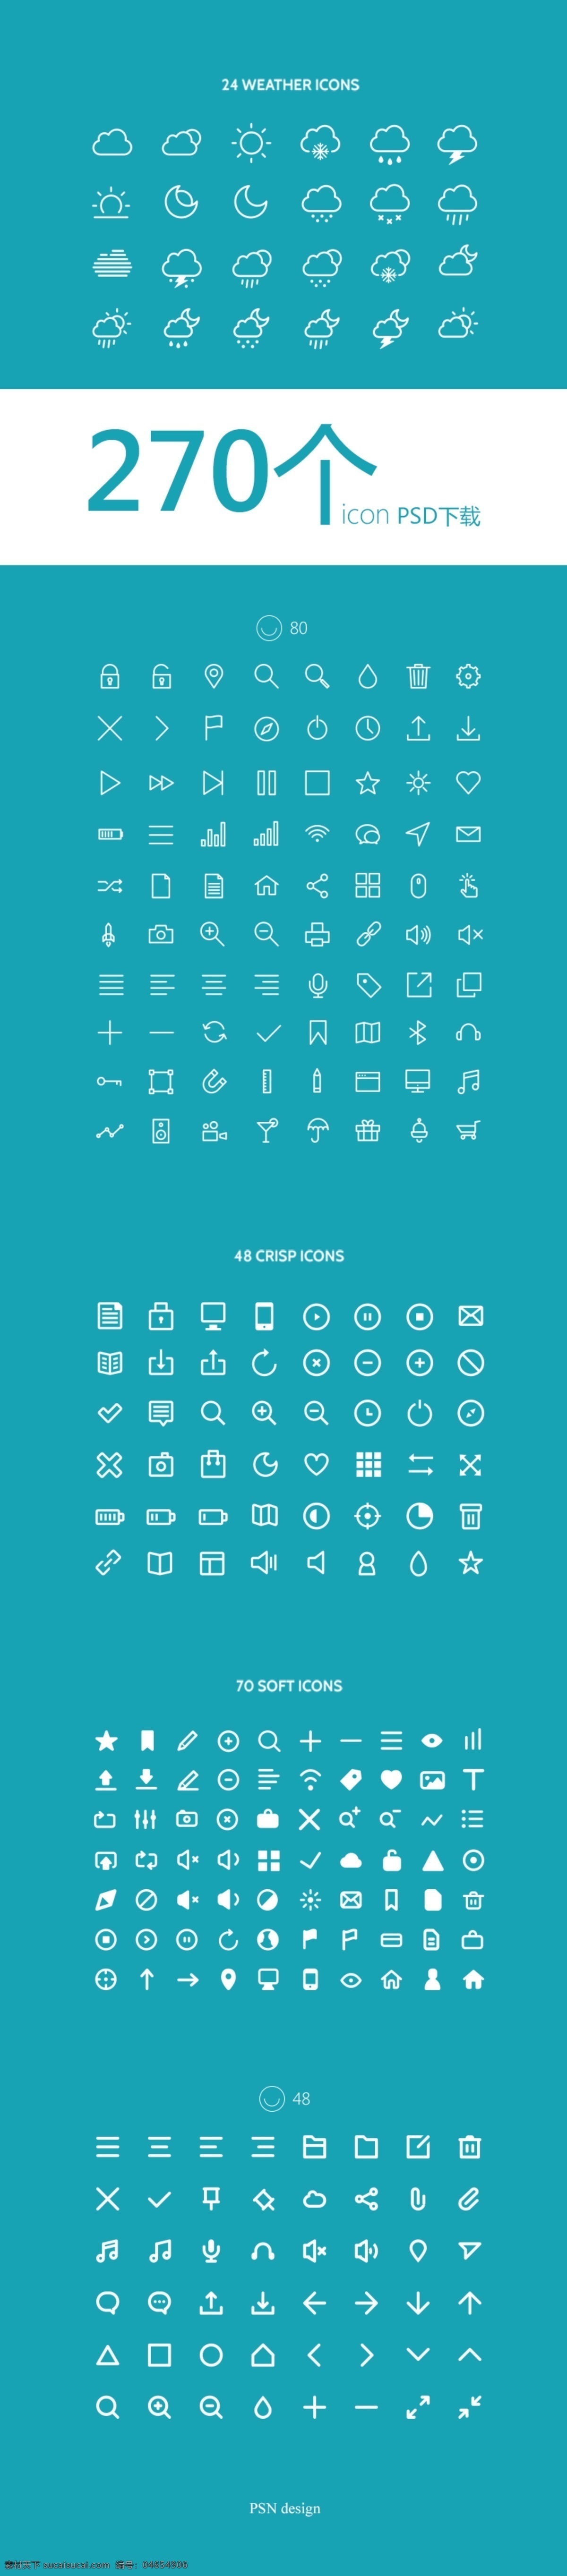 icon 图标素材 集合 270个 icon图标 素材集合 青色 天蓝色